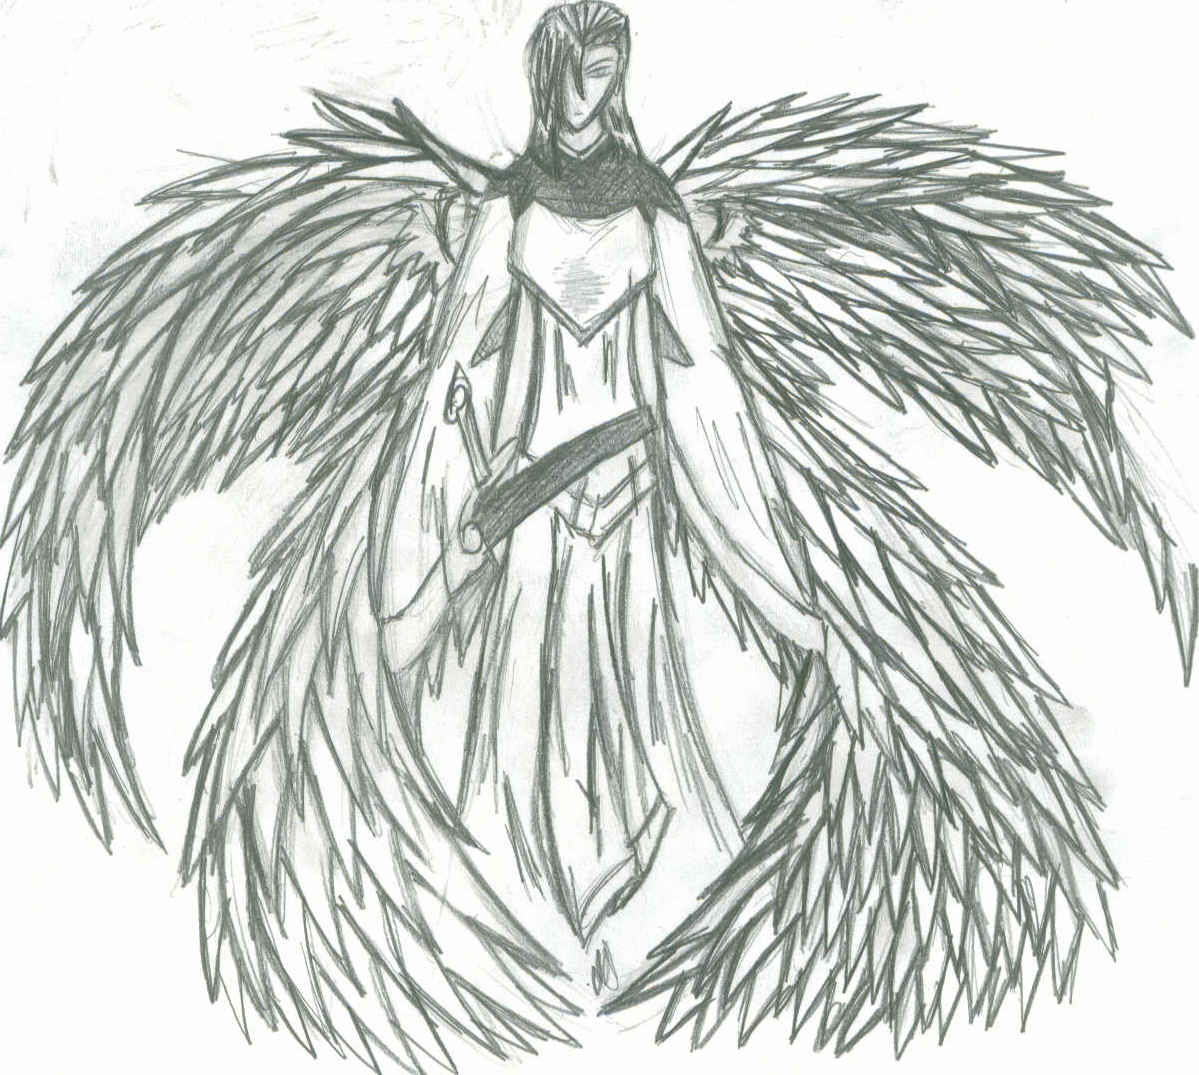 warrior angel by willwolf